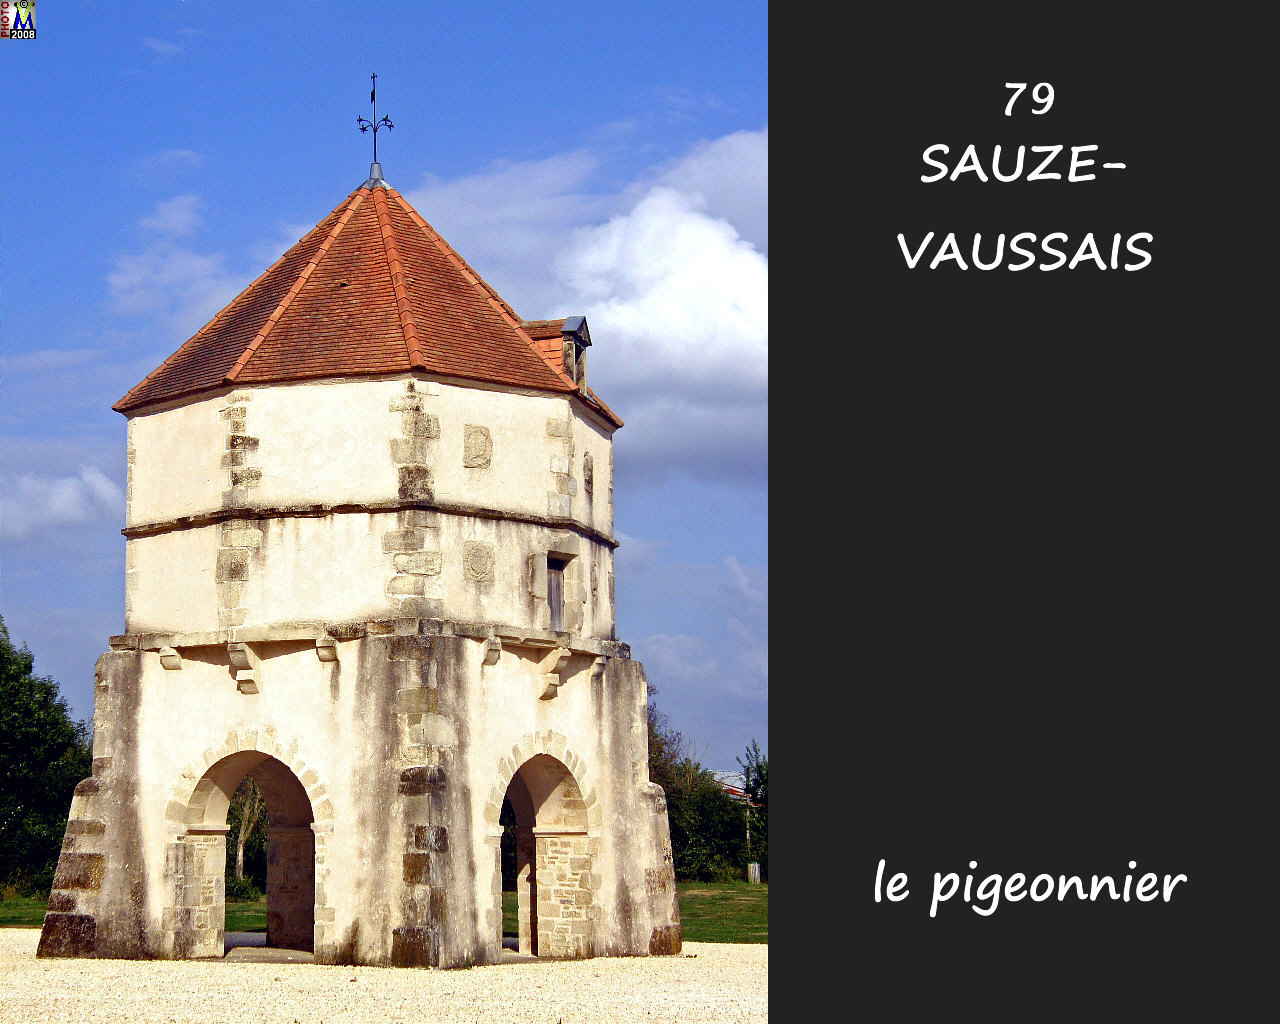 79SAUZE-VAUSSAIS_pigeonnier_100.jpg